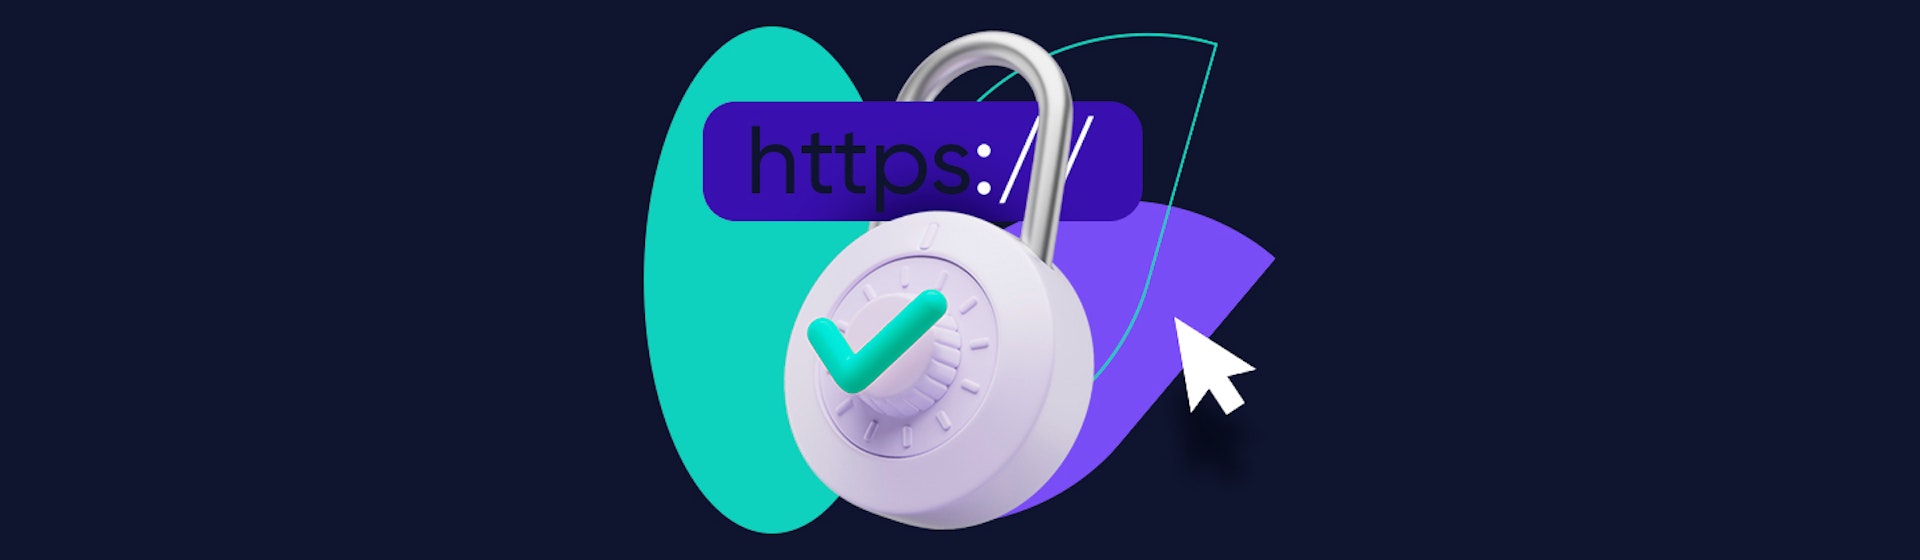 Protocolo HTTPS: ¡Mejora el posicionamiento y la seguridad de tu sitio web!